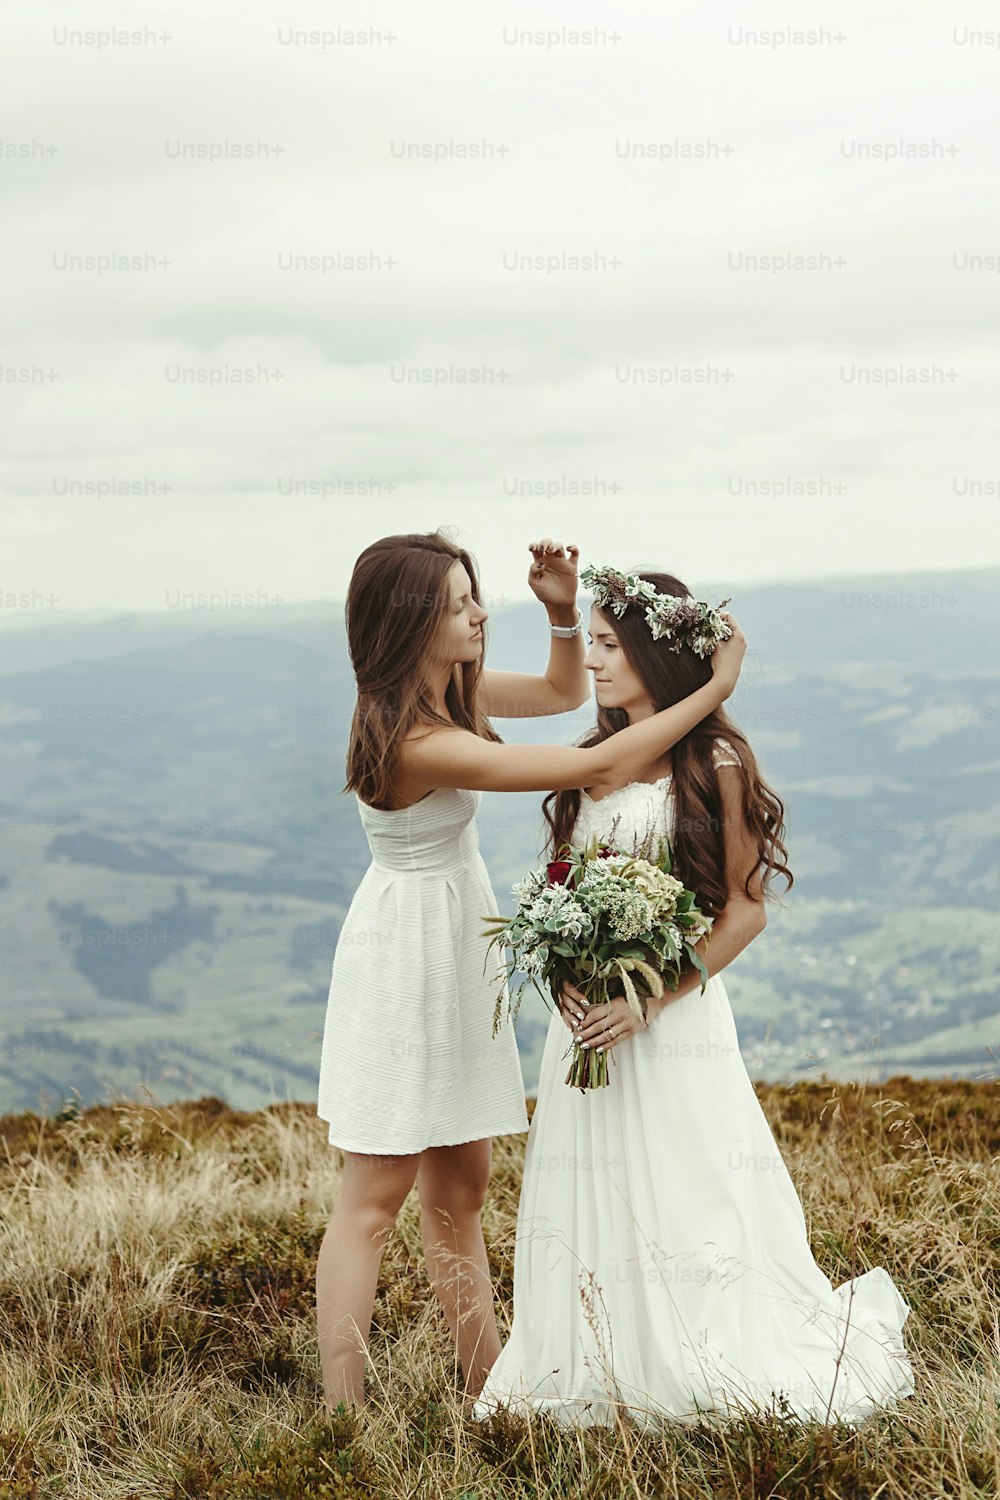 スタイリッシュな花嫁介添人は、ゴージャスな花嫁の準備、自由奔放に生きる結婚式、山での豪華な式典を支援します